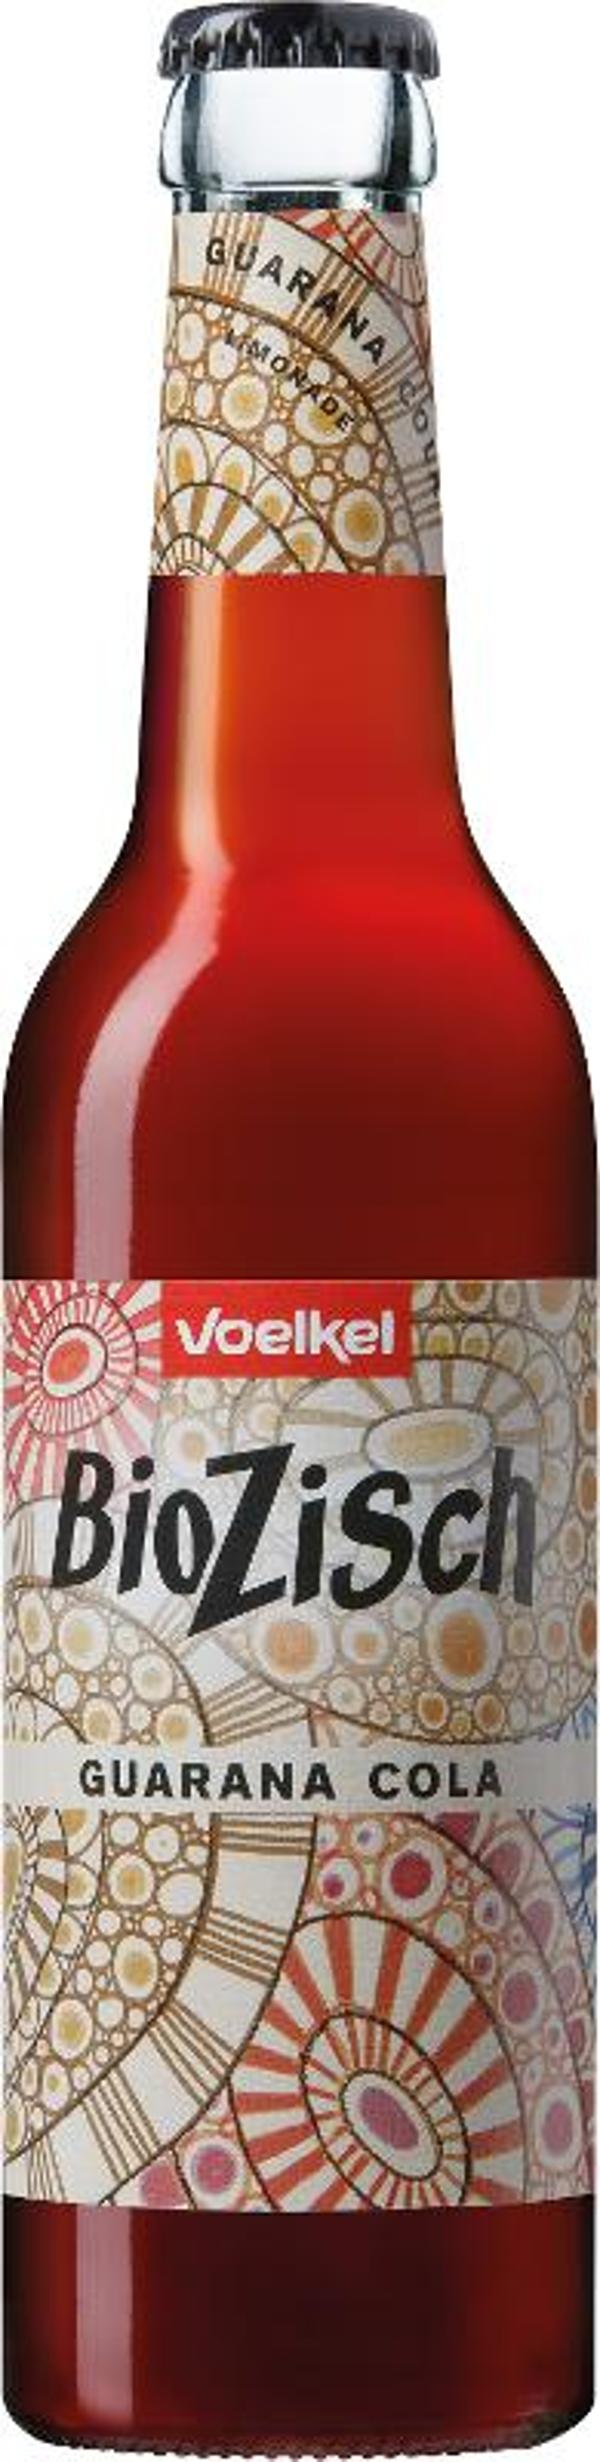 Produktfoto zu BioZisch Guarana Cola 0,33 Voelkel